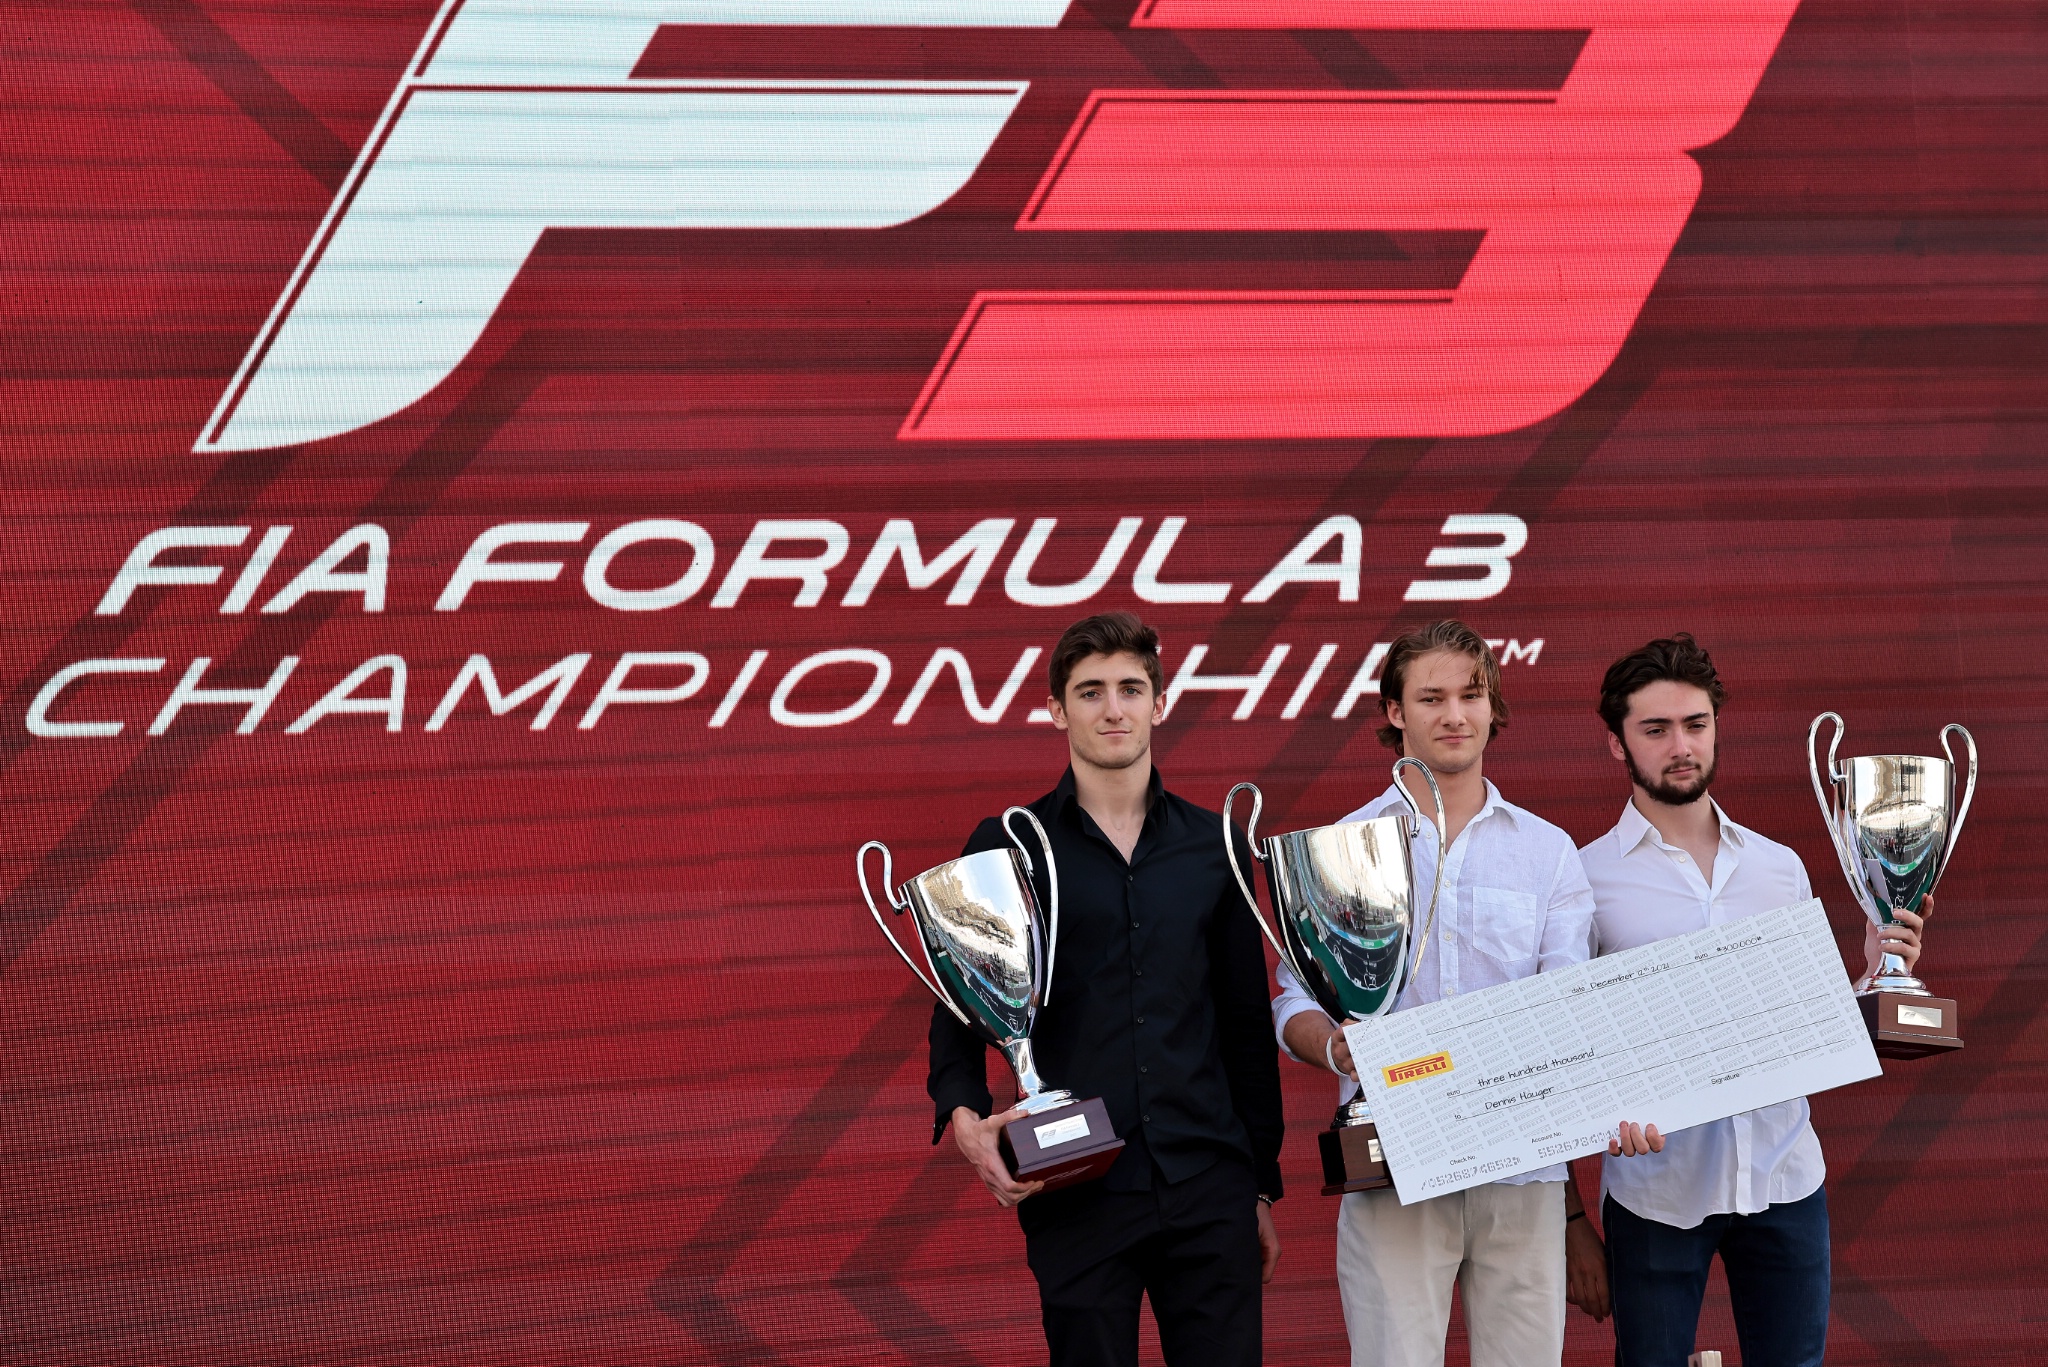 Tiga teratas di kejuaraan F3 (kiri ke kanan) : Jack Doohan (AUS) Trisula, kedua; Dennis Hauger (DEN) PREMA Racing, juara; Clement Novalak (FRA) Trisula, ketiga.